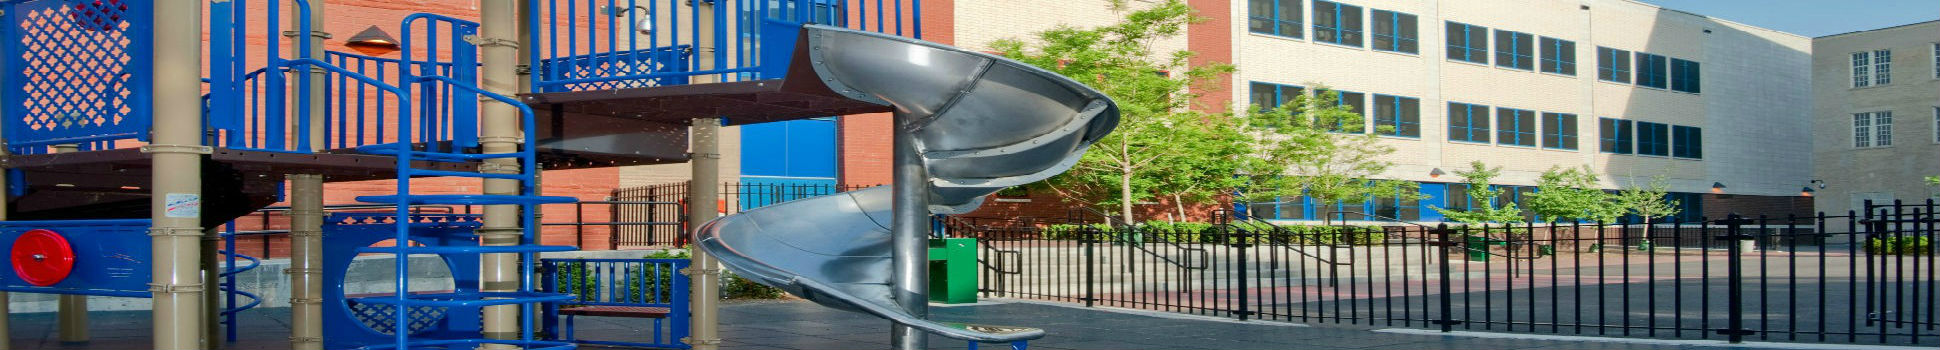 PS94 Annex Playground - Bronx